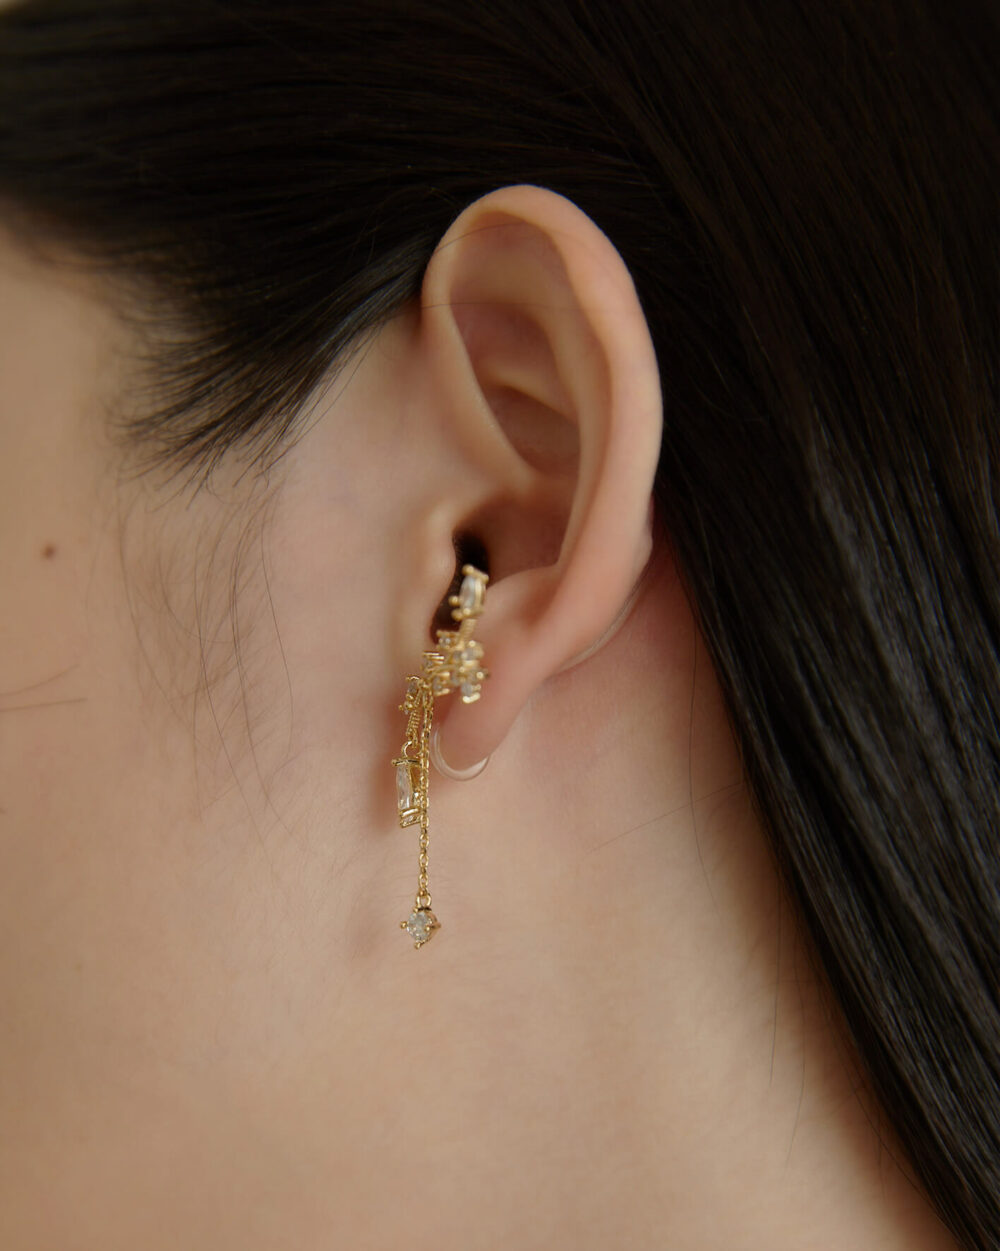 Eco安珂,韓國飾品,韓國耳環,純銀耳針耳環,矽膠夾耳環,透明耳夾耳環,垂墜透明耳夾